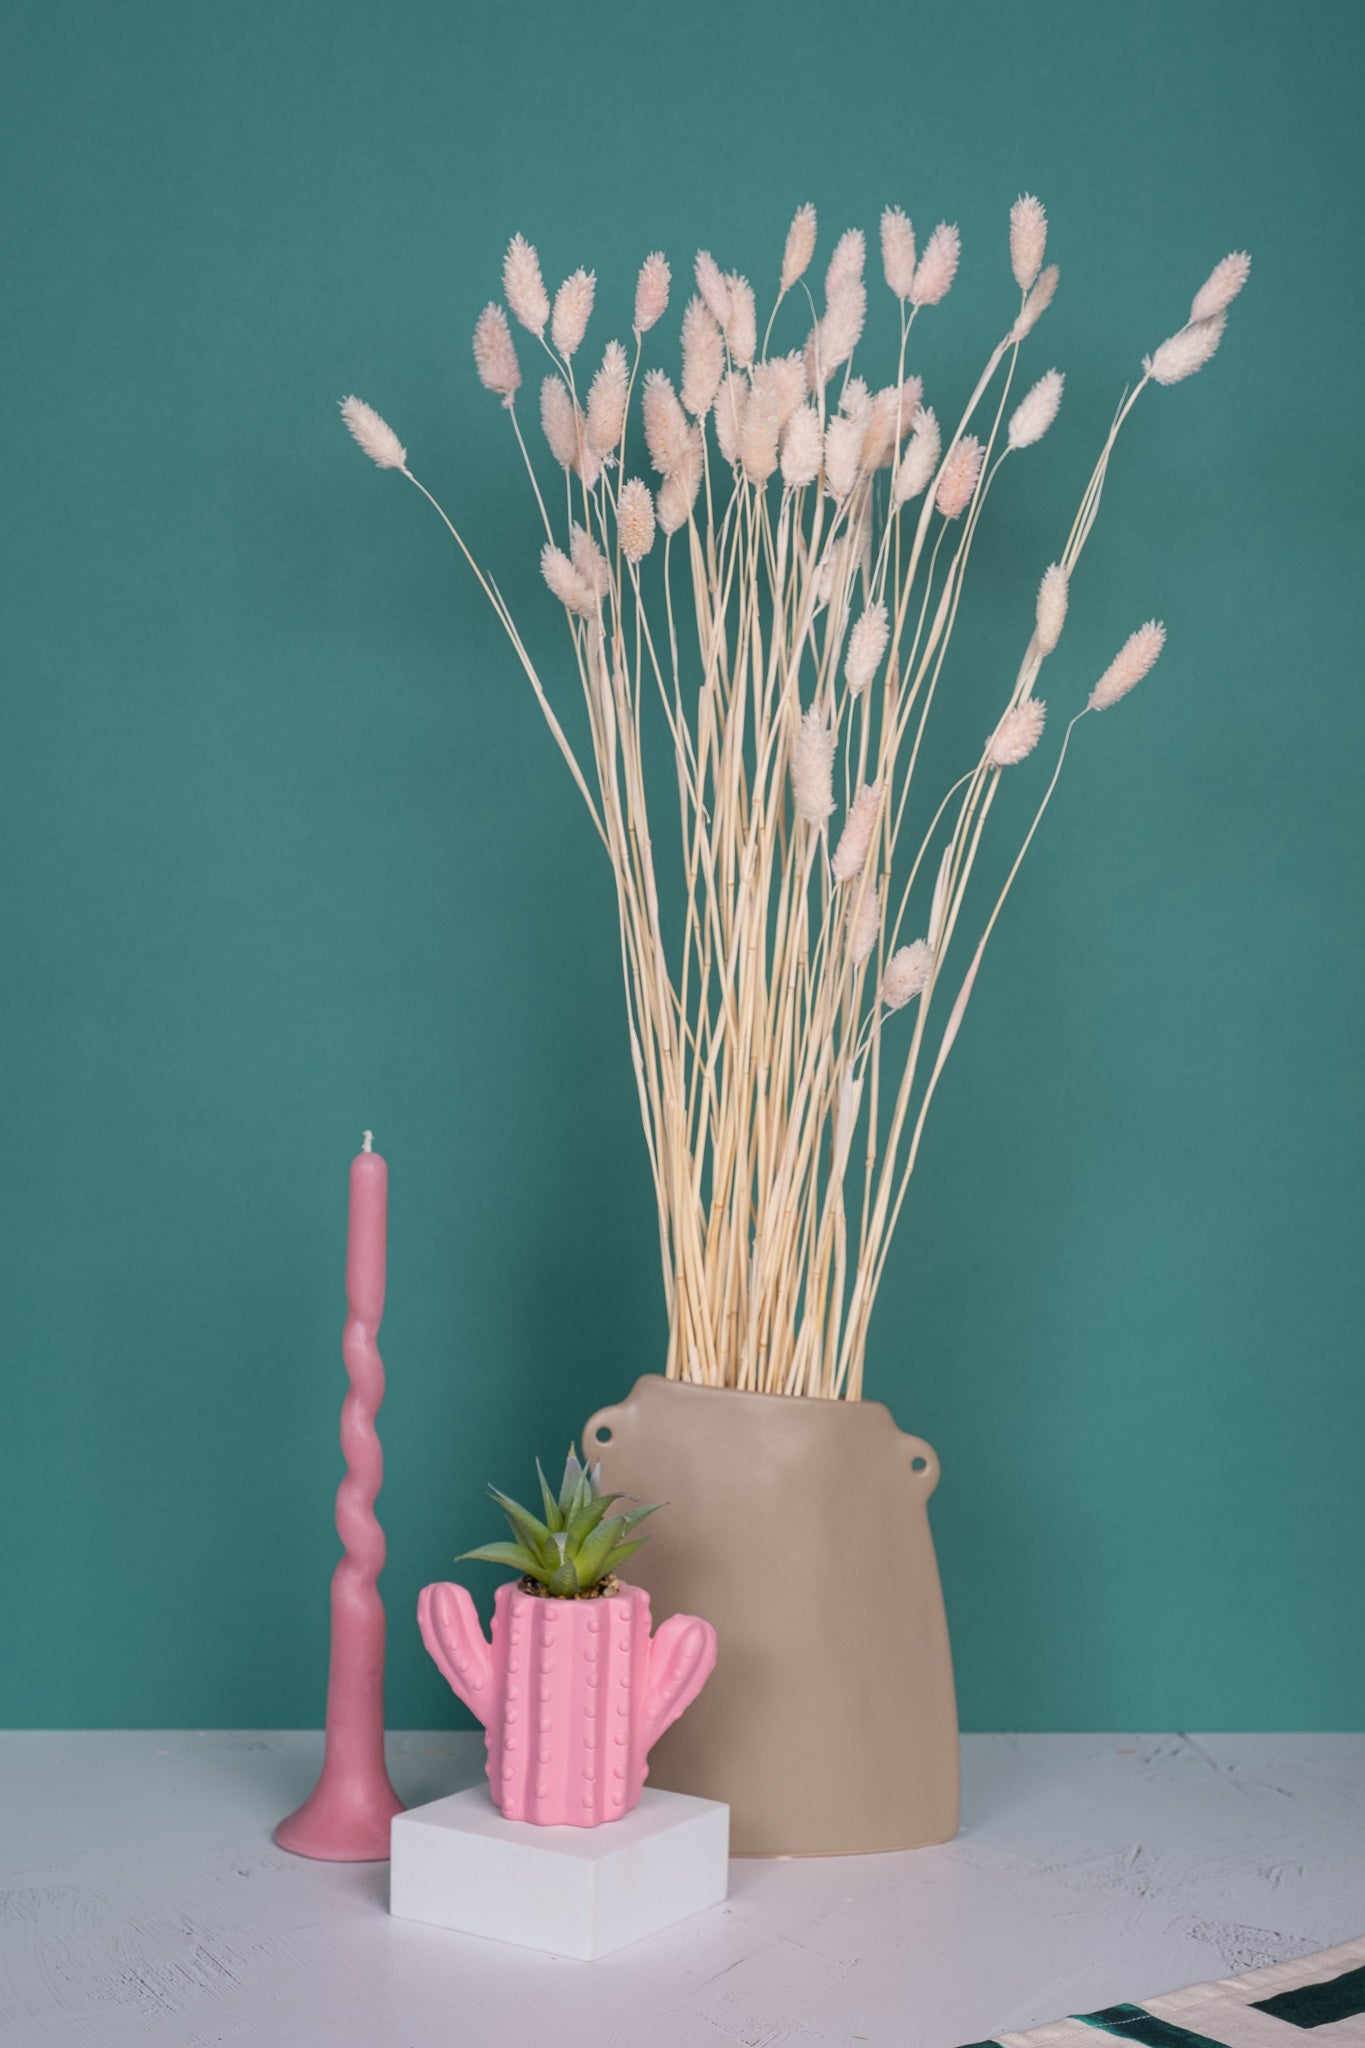 Blushest Pink Gem Grass (Textured Bunny Tails)